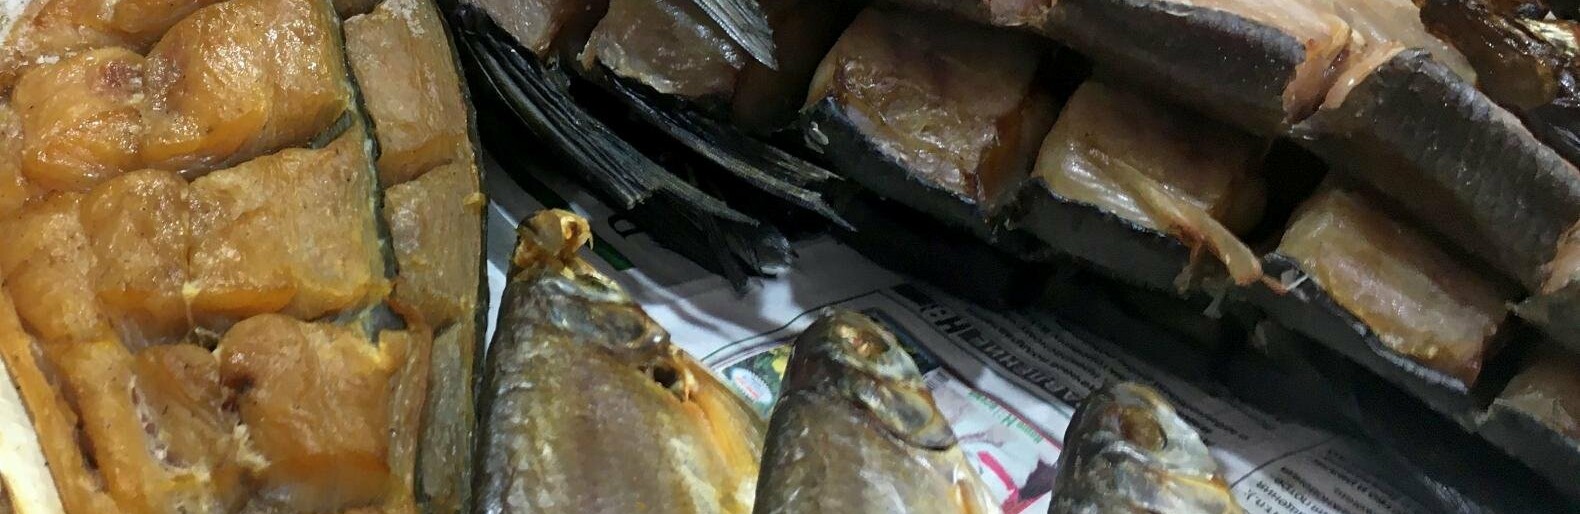 Житель Ростовской области умер от ботулизма, отравившись вяленой рыбой